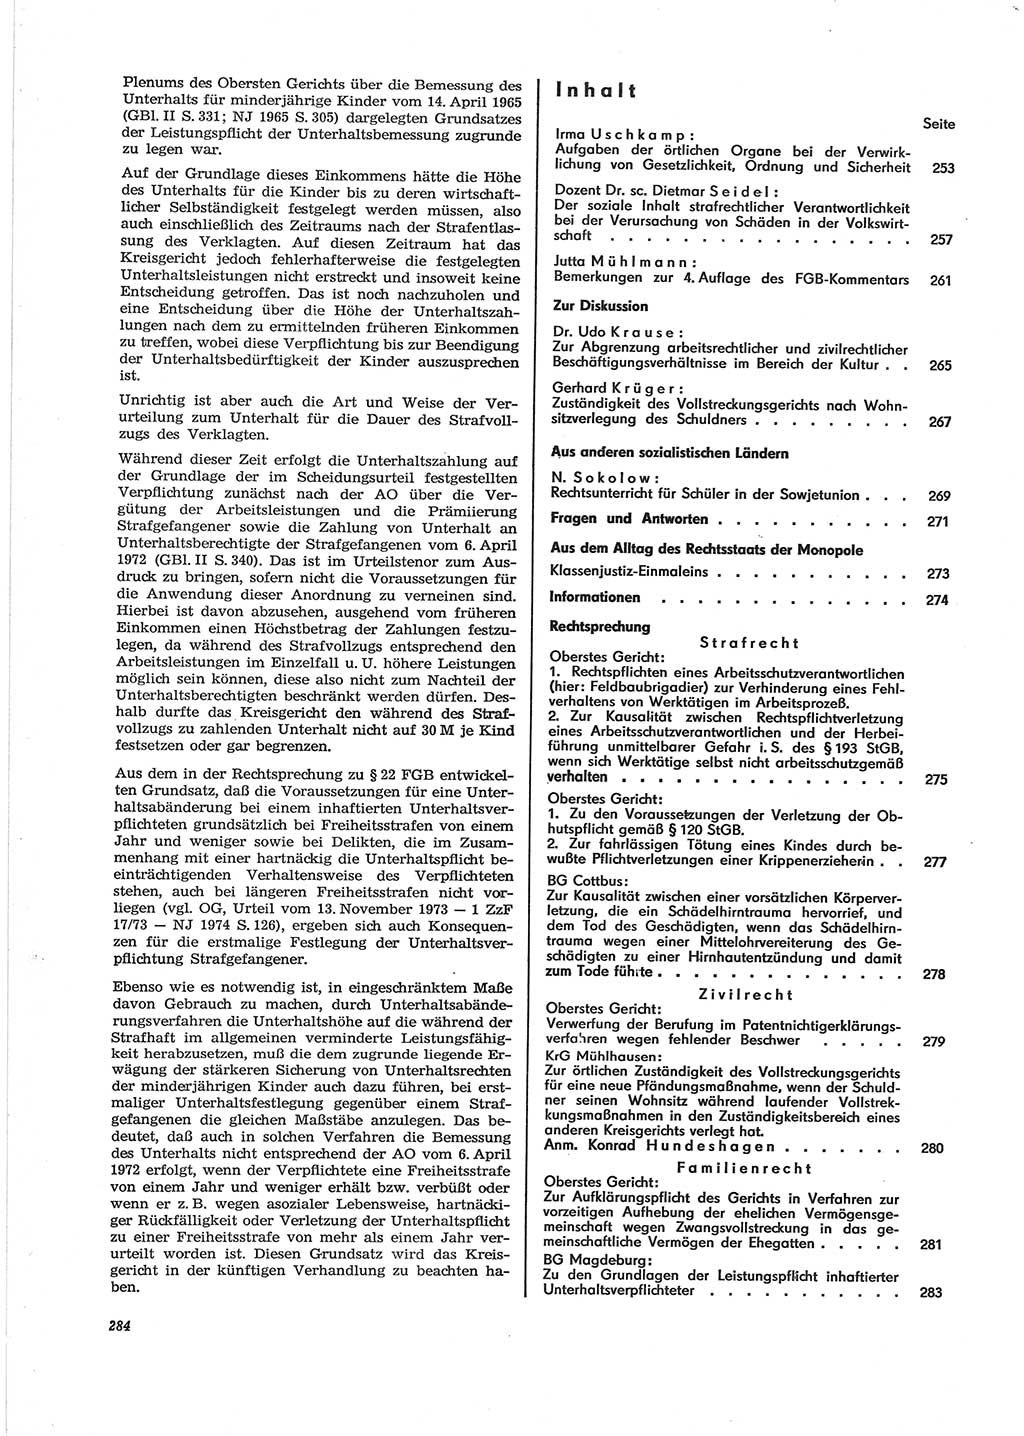 Neue Justiz (NJ), Zeitschrift für Recht und Rechtswissenschaft [Deutsche Demokratische Republik (DDR)], 28. Jahrgang 1974, Seite 284 (NJ DDR 1974, S. 284)